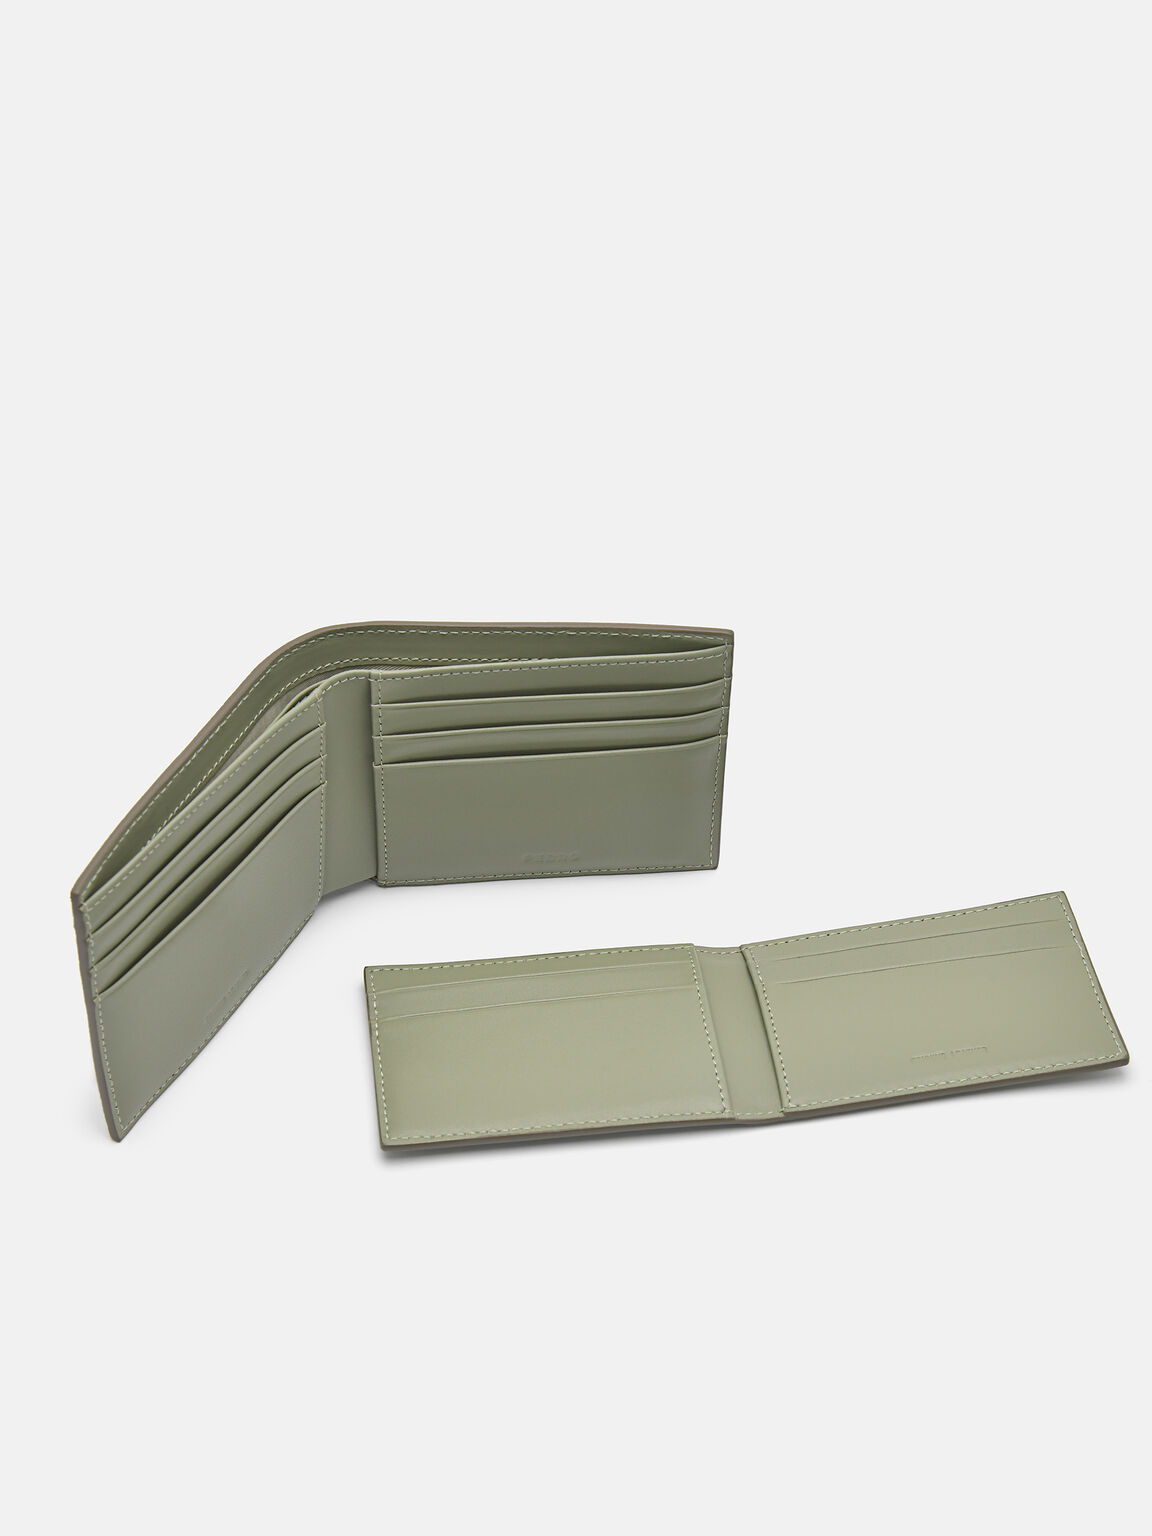 Oliver Leather Bi-Fold Wallet with Insert, Olive, hi-res